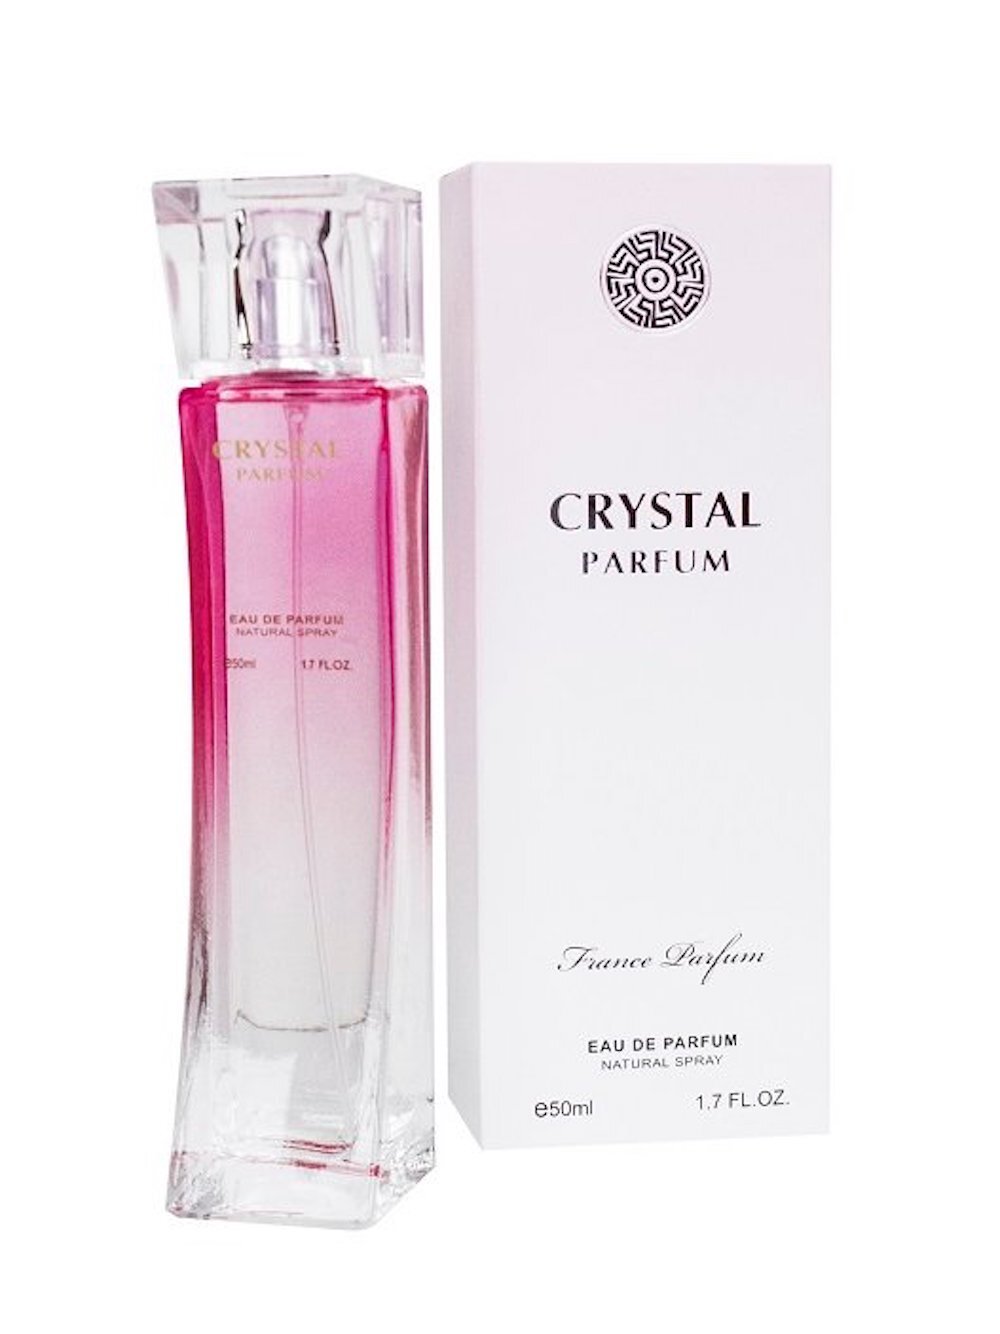 Парфюм crystal. Crystal Parfum 50ml natural. Туалетная вода 50 мл Crystal. Ascania Crystal туалетная вода женская. Crystal Parfum Perfume.